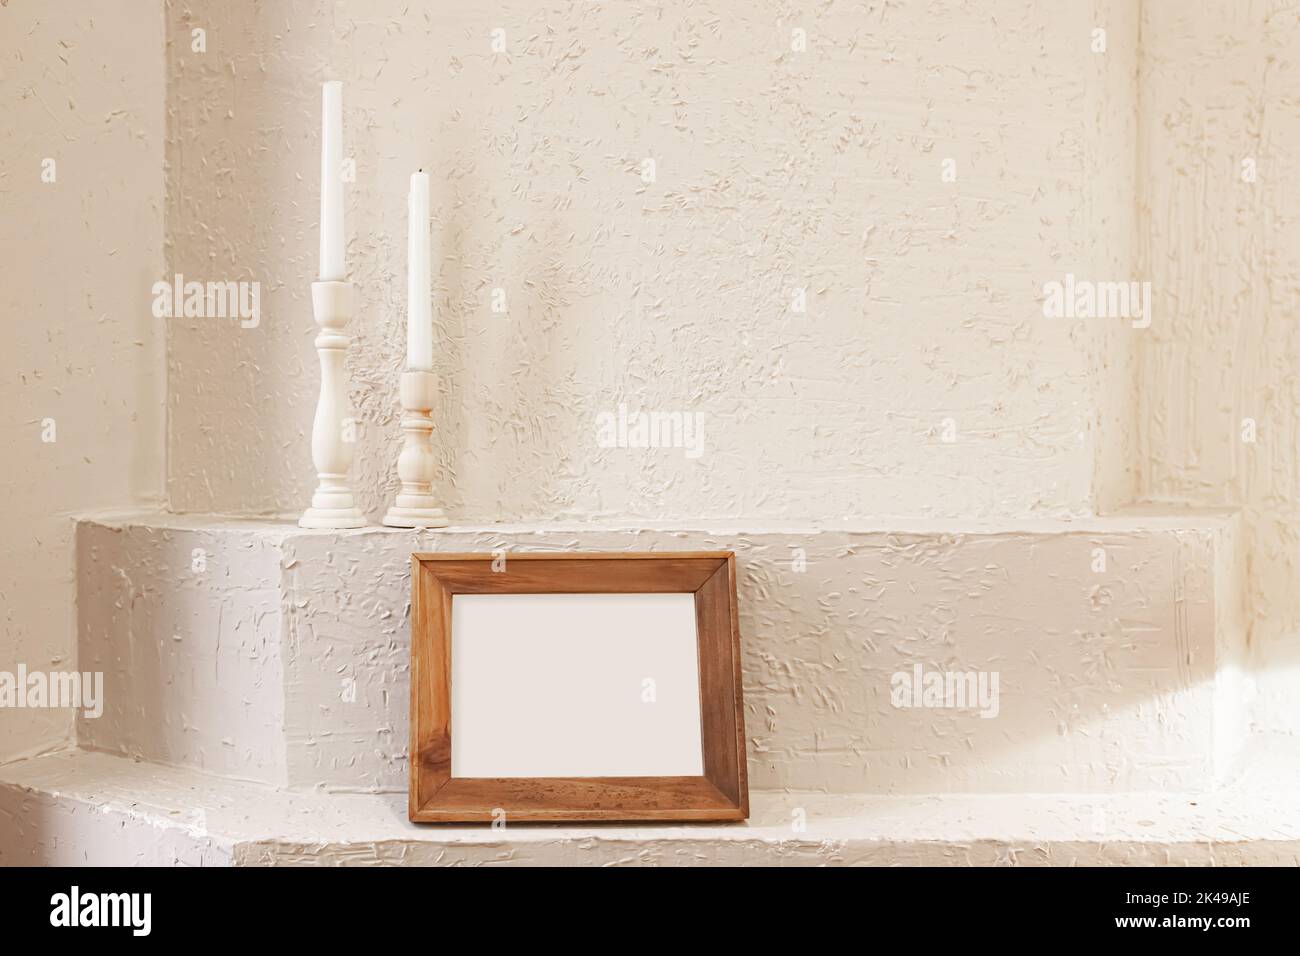 Fotografia del mockup orizzontale della struttura di legno e delle candele sullo sfondo bianco della parete dell'intonaco Foto Stock